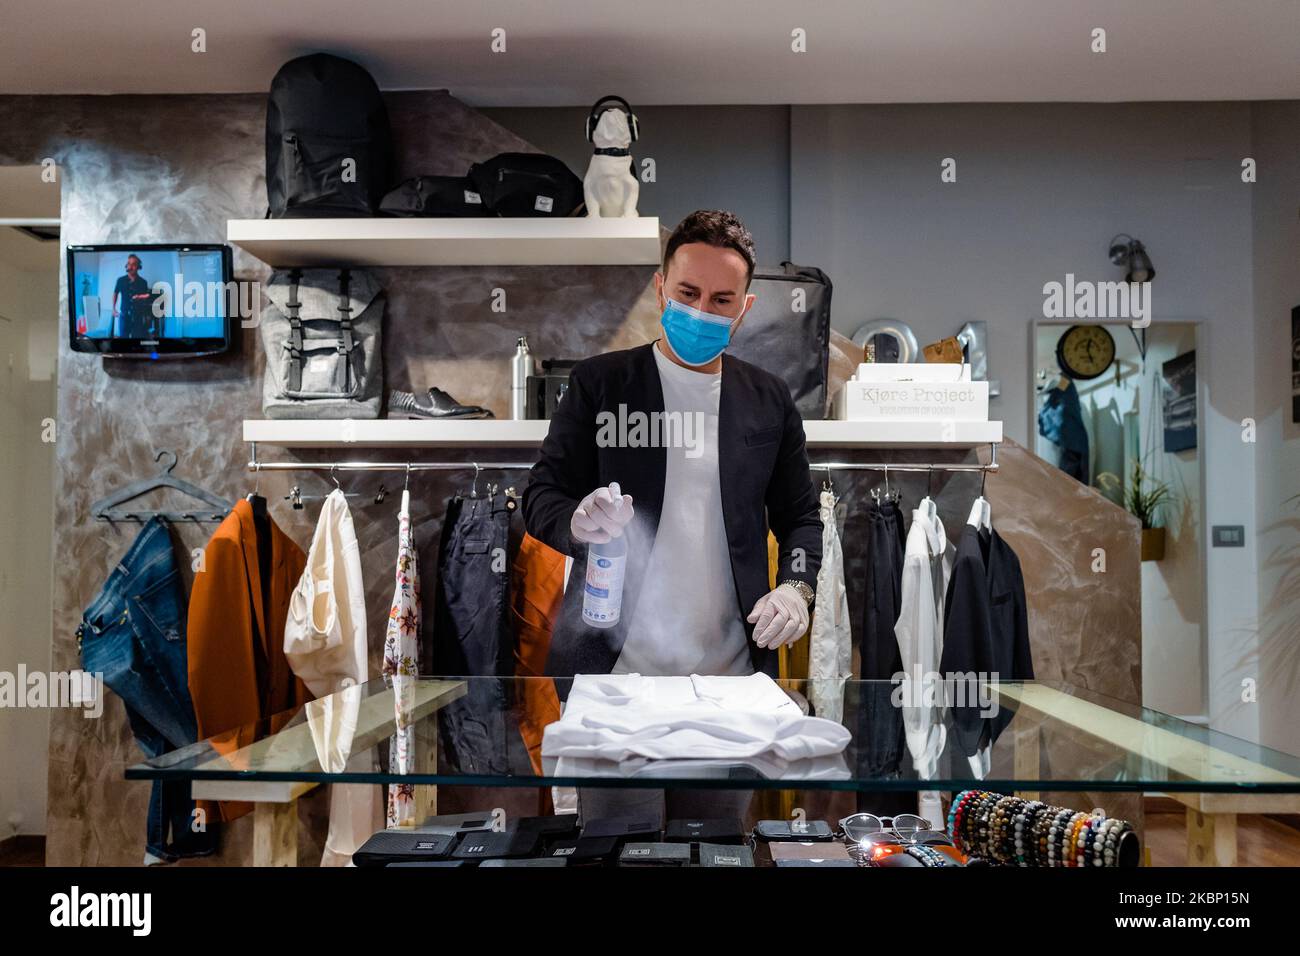 El dueño de una tienda de ropa desinfecta la ropa, en Molfetta, Italia, el 19 mayo de 2020. A partir del de mayo también se reabrieron las tiendas de ropa